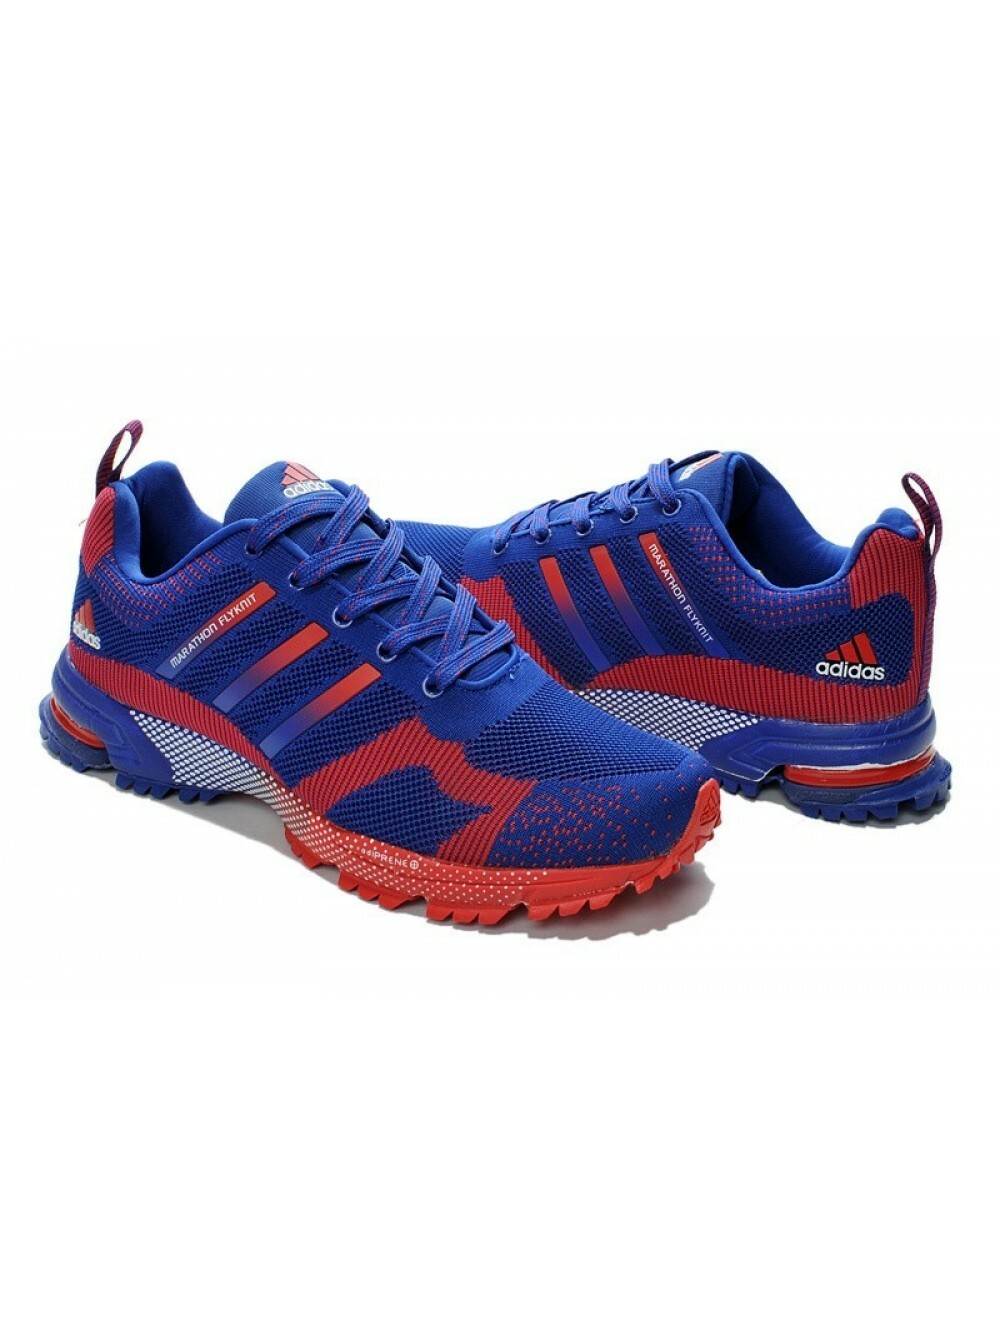 Обувь адидас кроссовки. Adidas Marathon Flyknit. Кроссовки адидас мужские a243-4. Adidas Marathon Flyknit Blue. Adidas Marathon Flyknit Blue/Red.